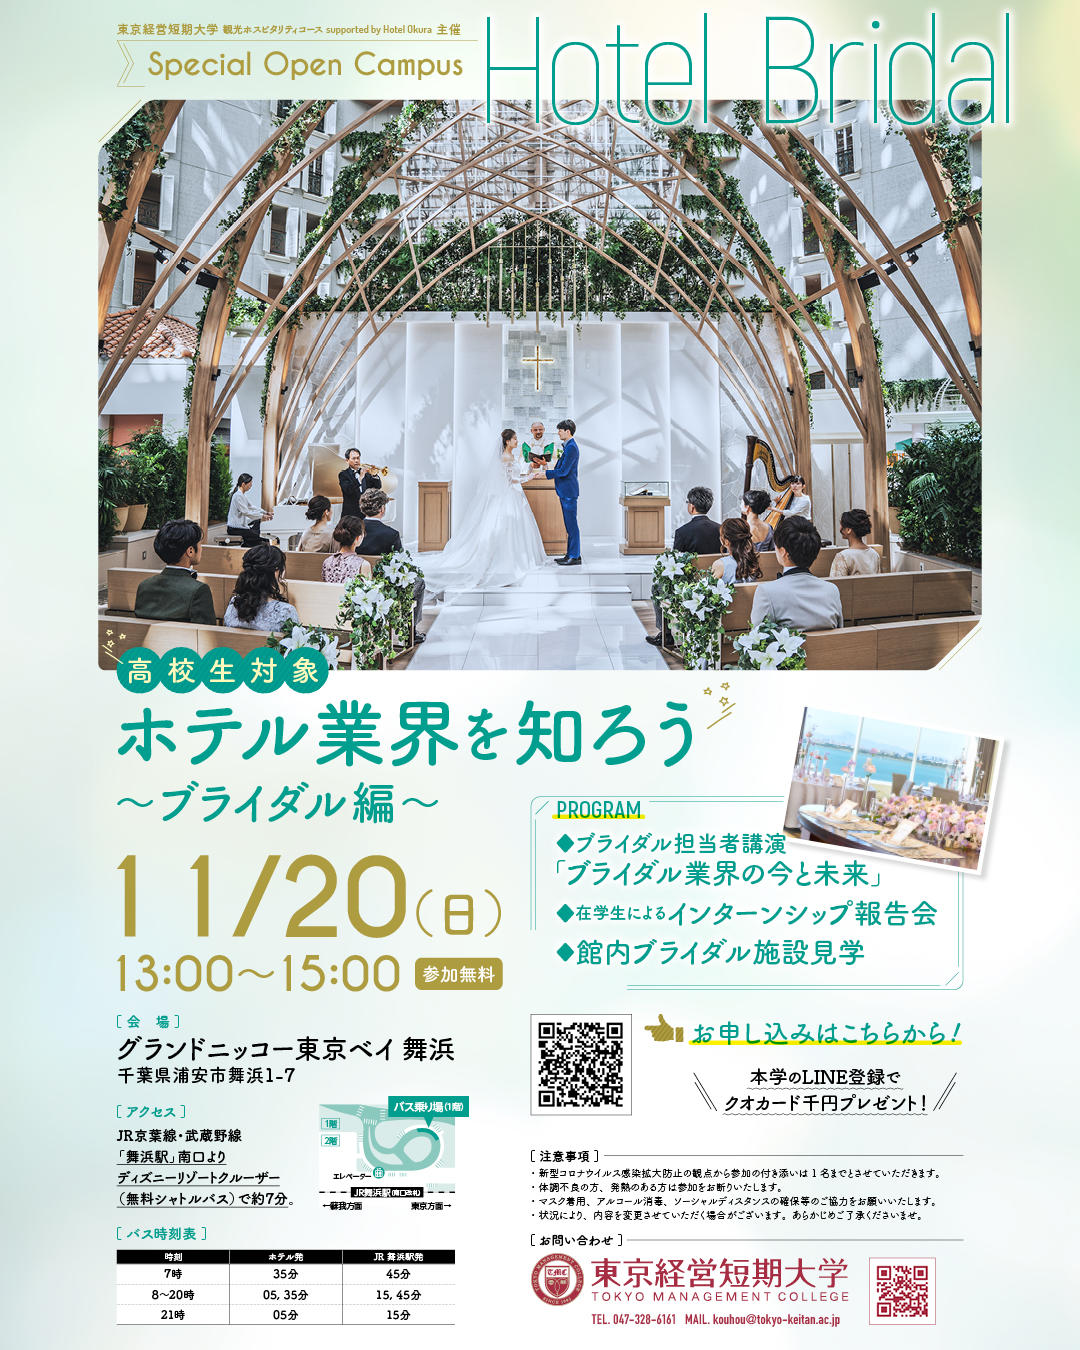 東京経営短期大学「観光ホスピタリティコースsupported by Hotel Okura」が11月20日に「ホテル業界を知ろう～ブライダル編～」を開催 -- 高校生対象特別プログラム